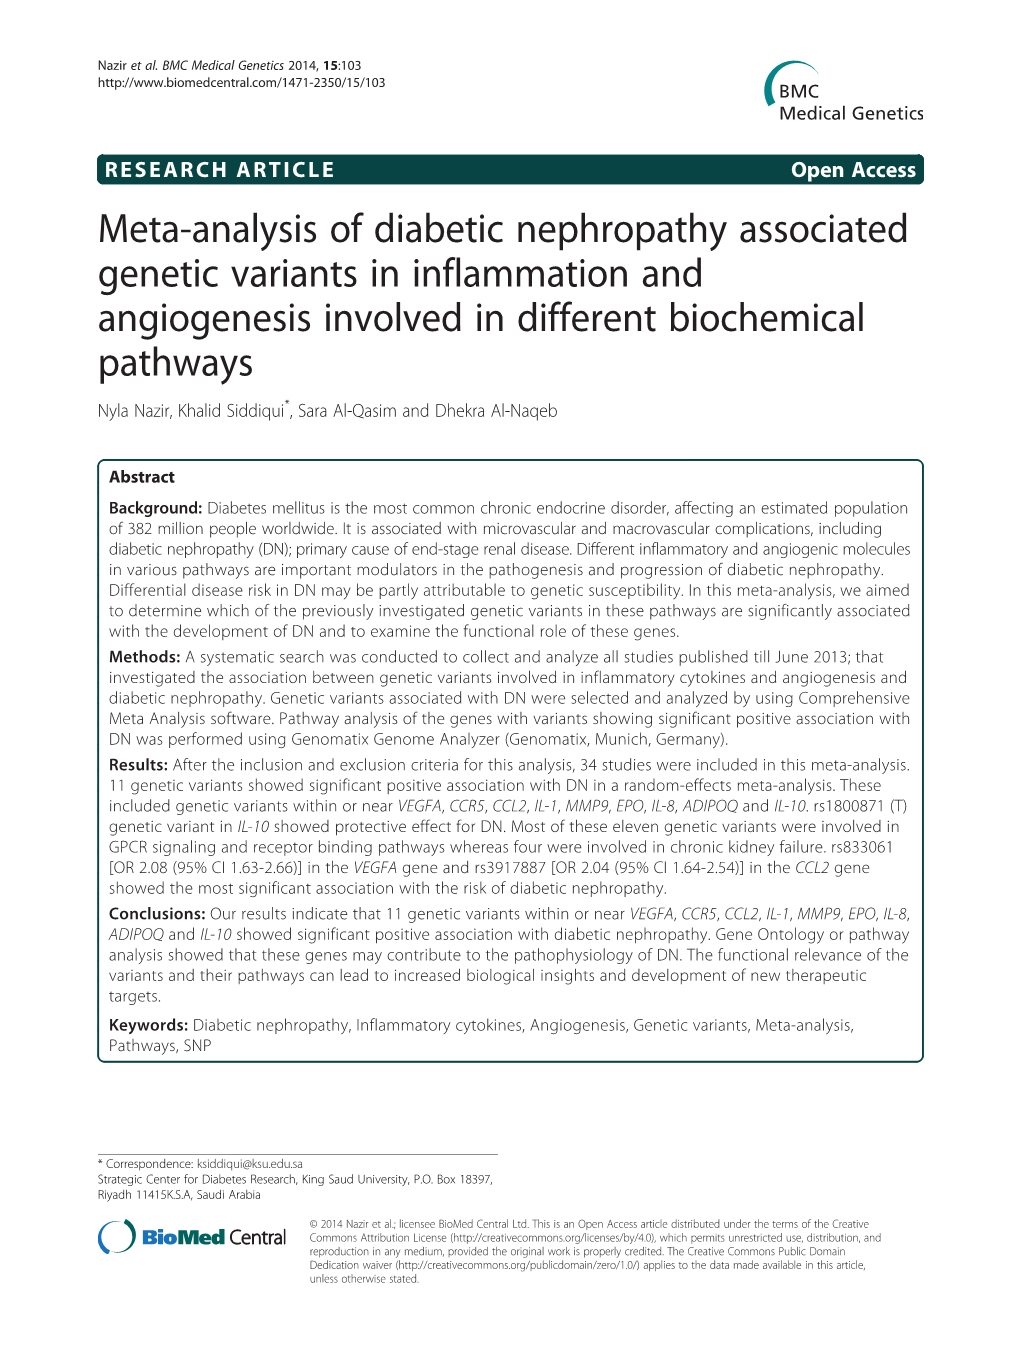 Meta-Analysis of Diabetic Nephropathy Associated Genetic Variants In